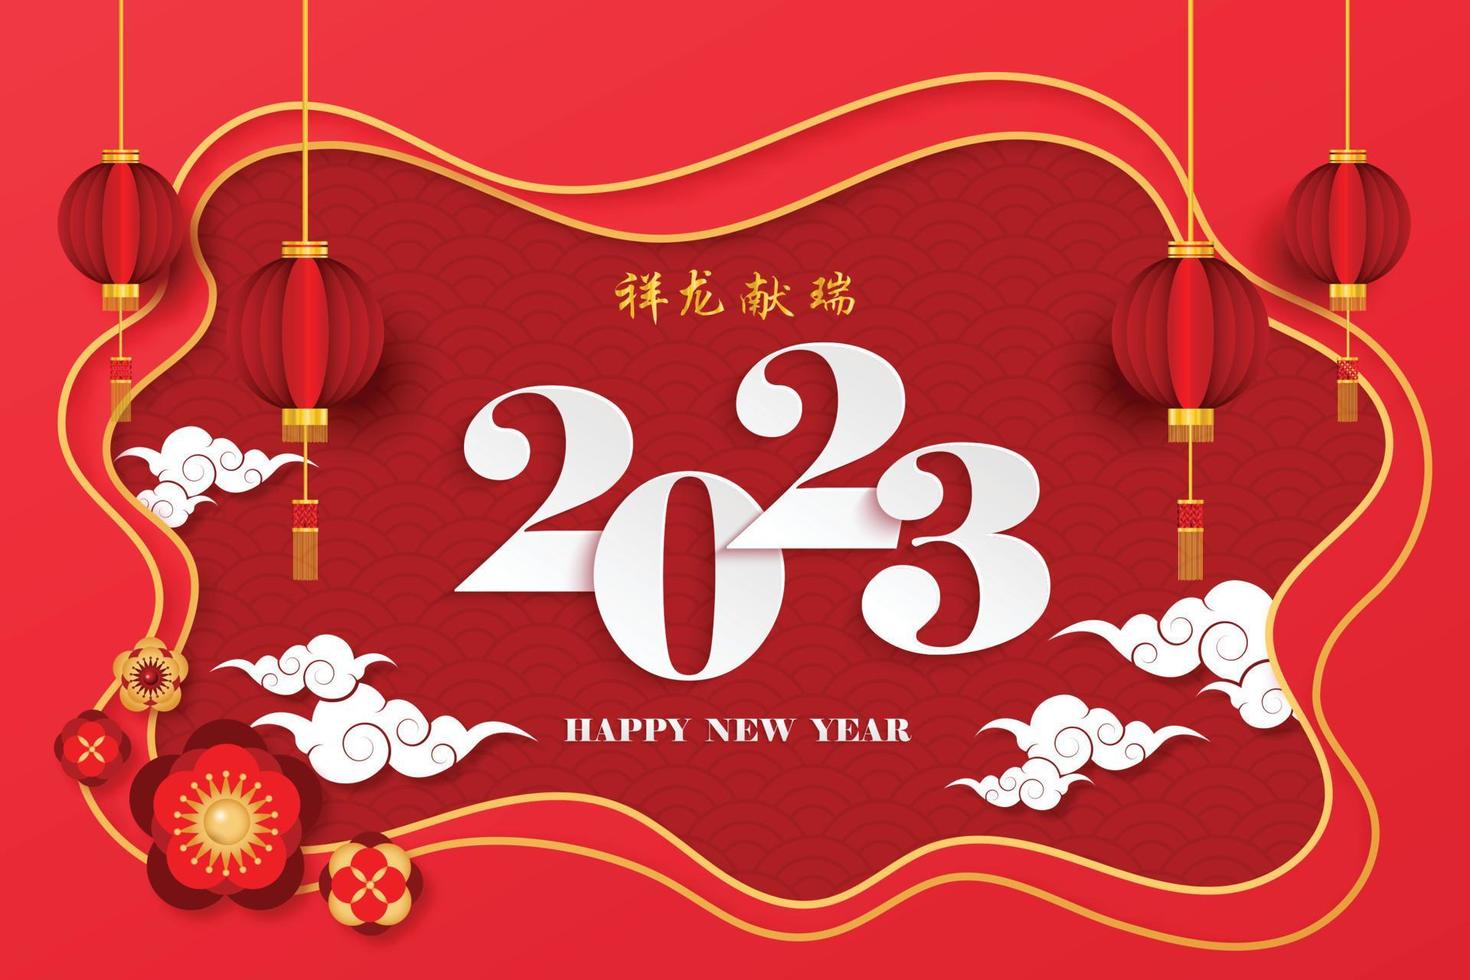 gott kinesiskt nytt år 2023 i rött kinesiskt mönsterram kinesisk formulering översättning kinesisk kalender för kaninåret 2022 vektor